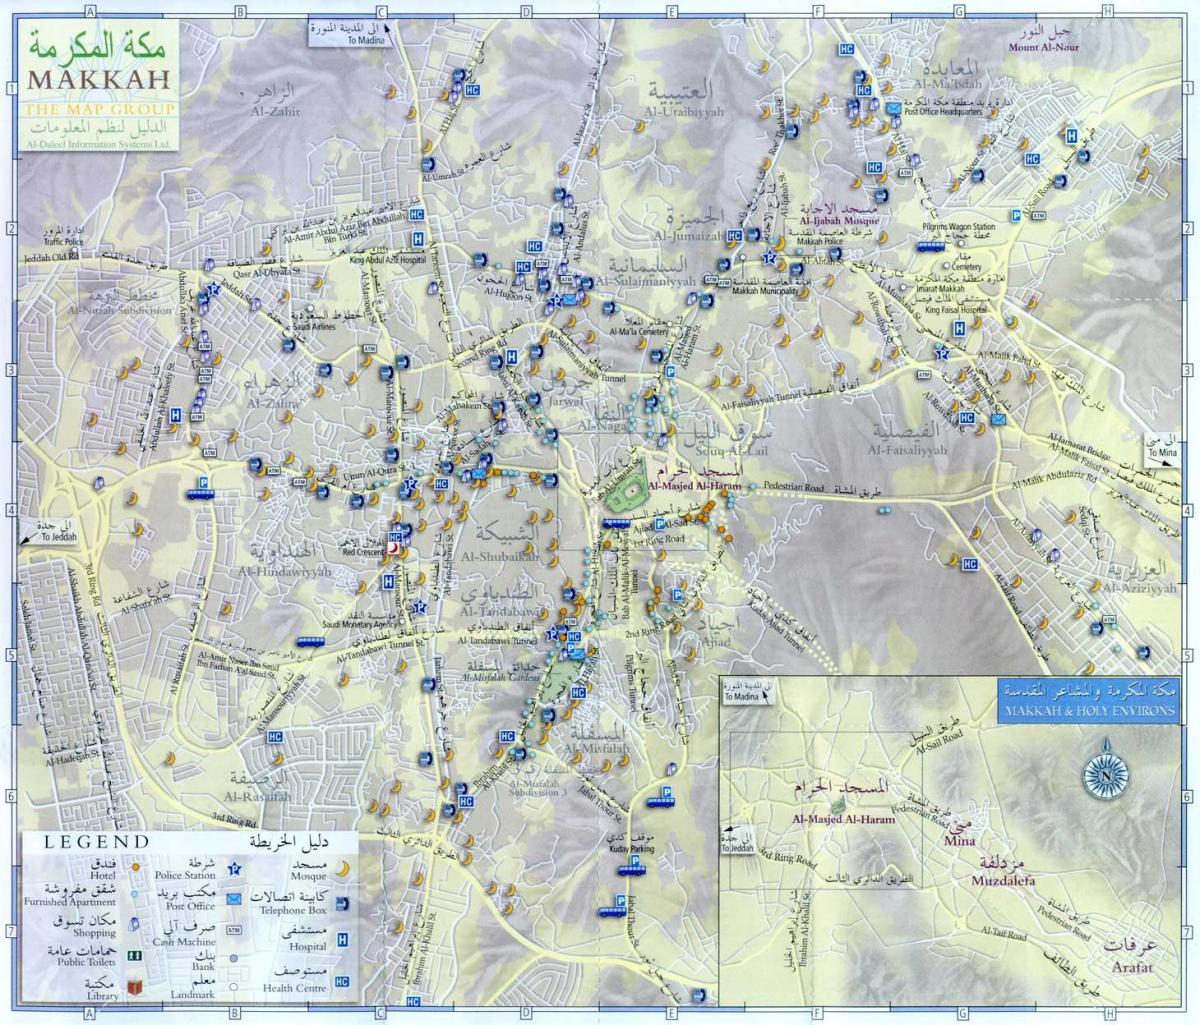 kort over rute Makkah